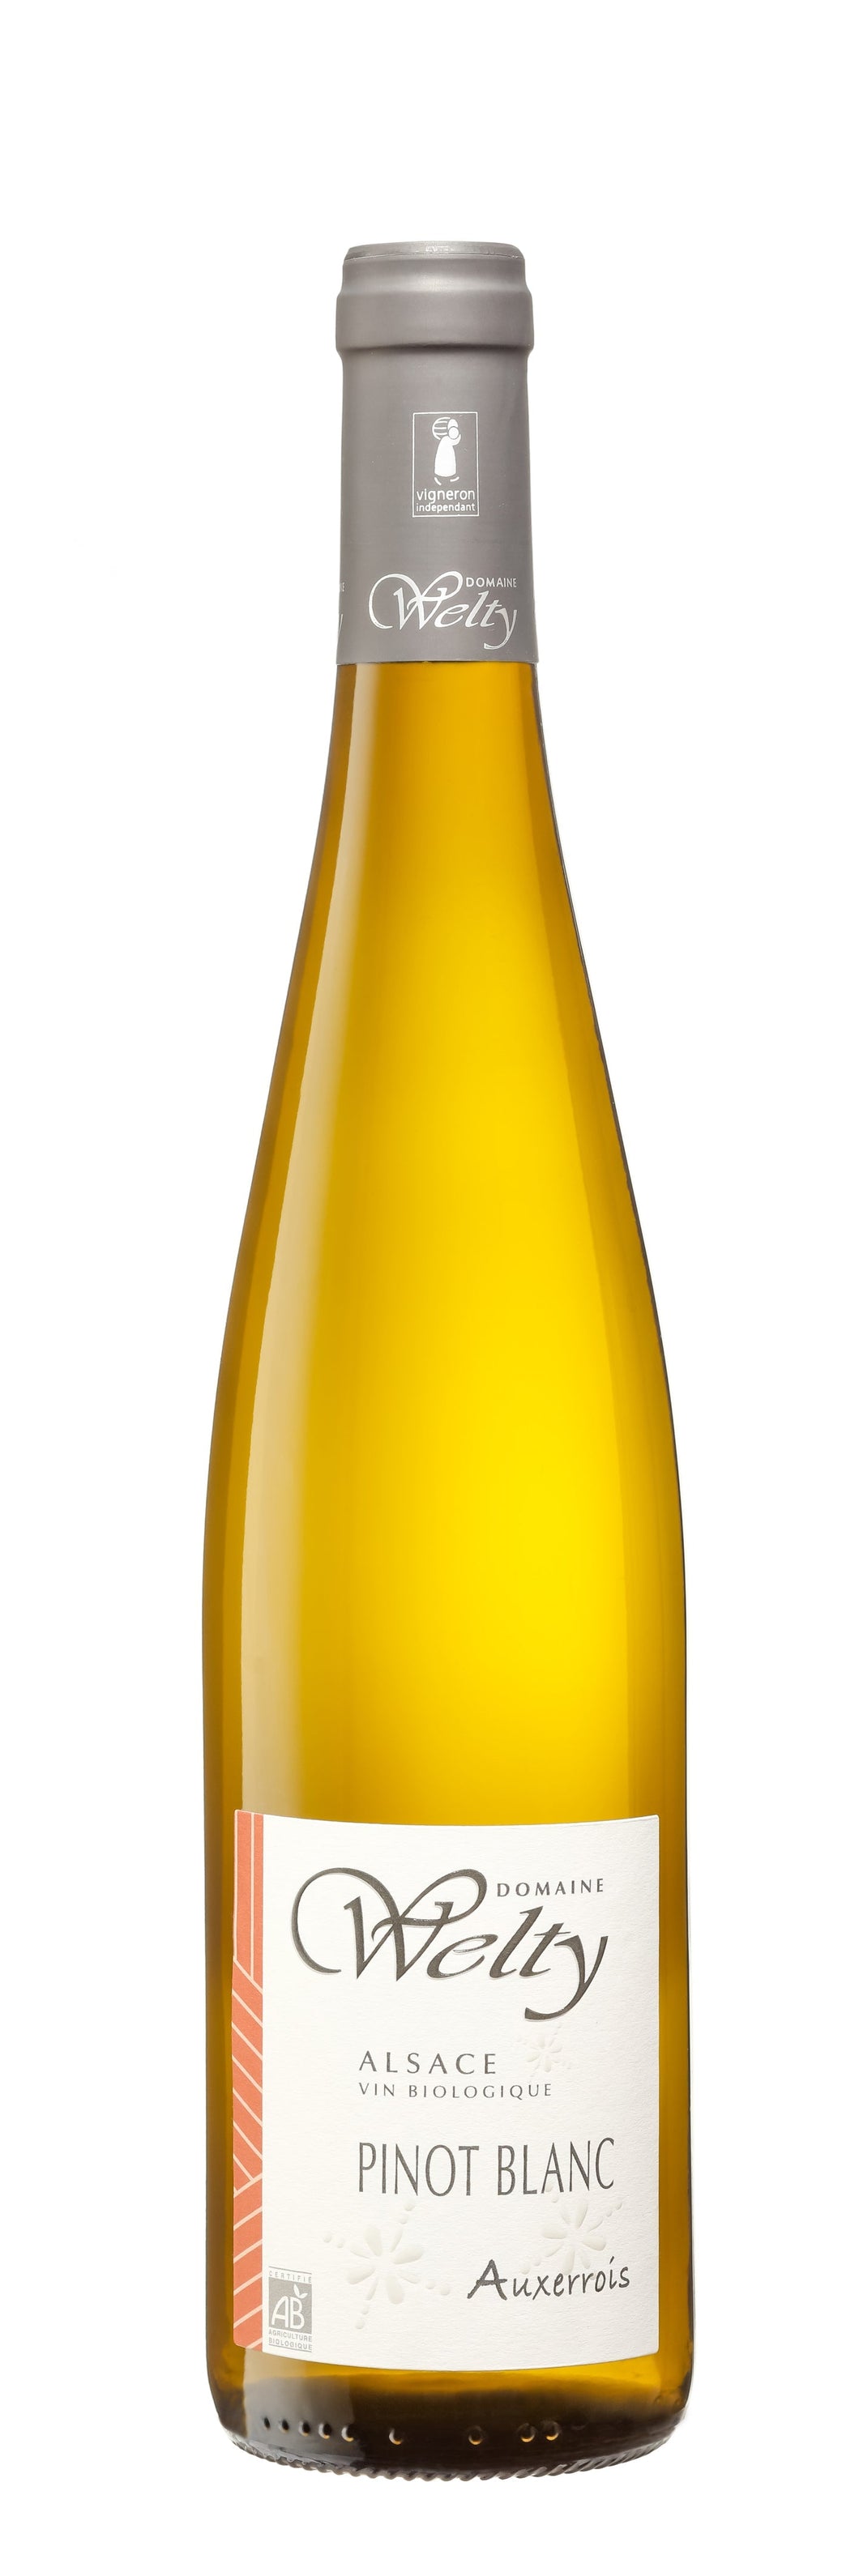 Pinot Blanc Auxerrois 2021 Vin Biologique